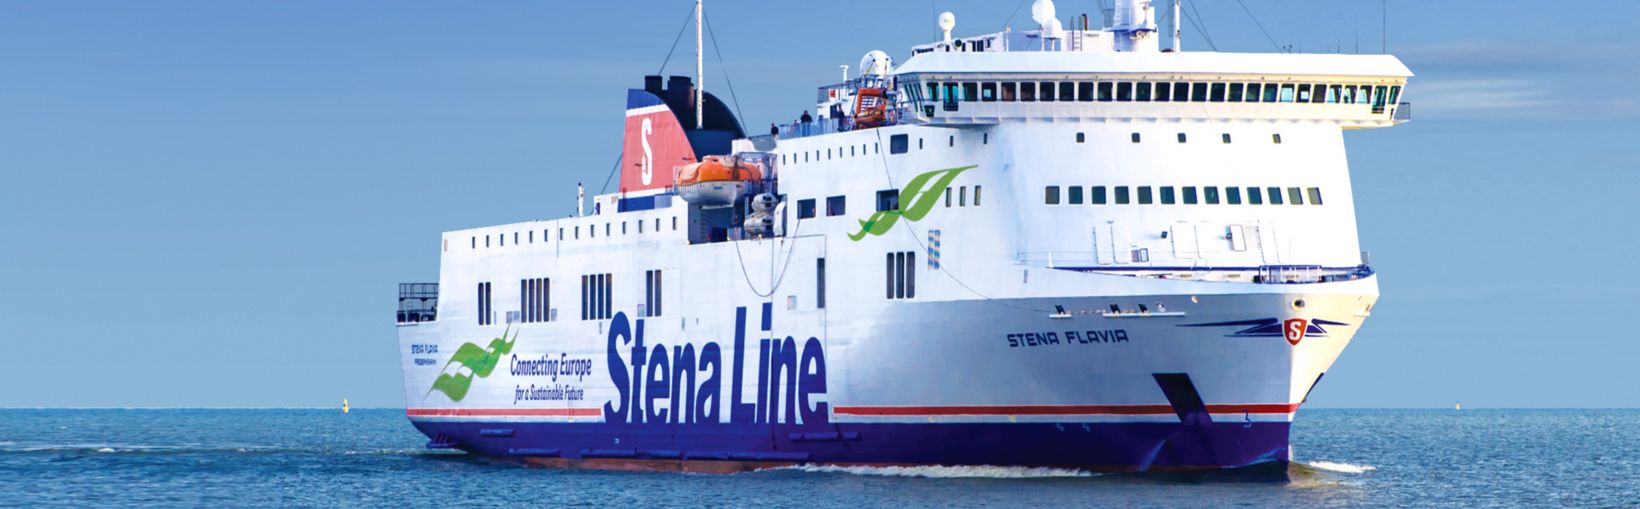 Færgen Stena Flavia til søs